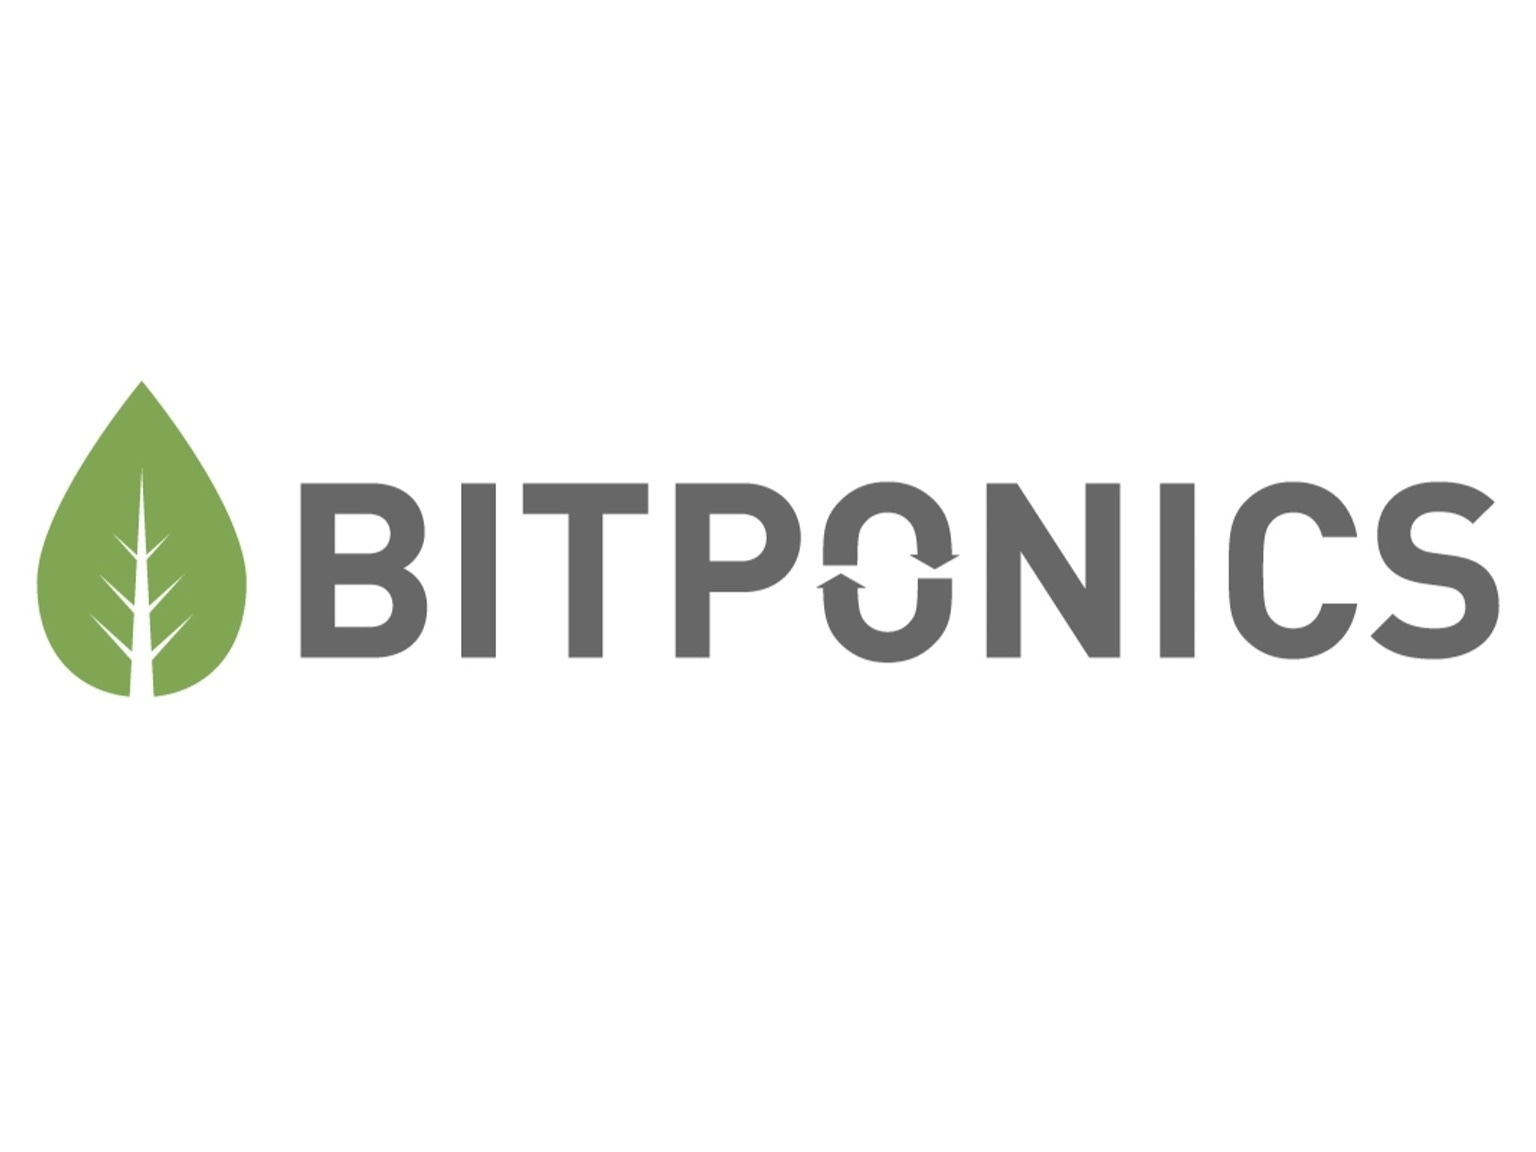 Bitponics